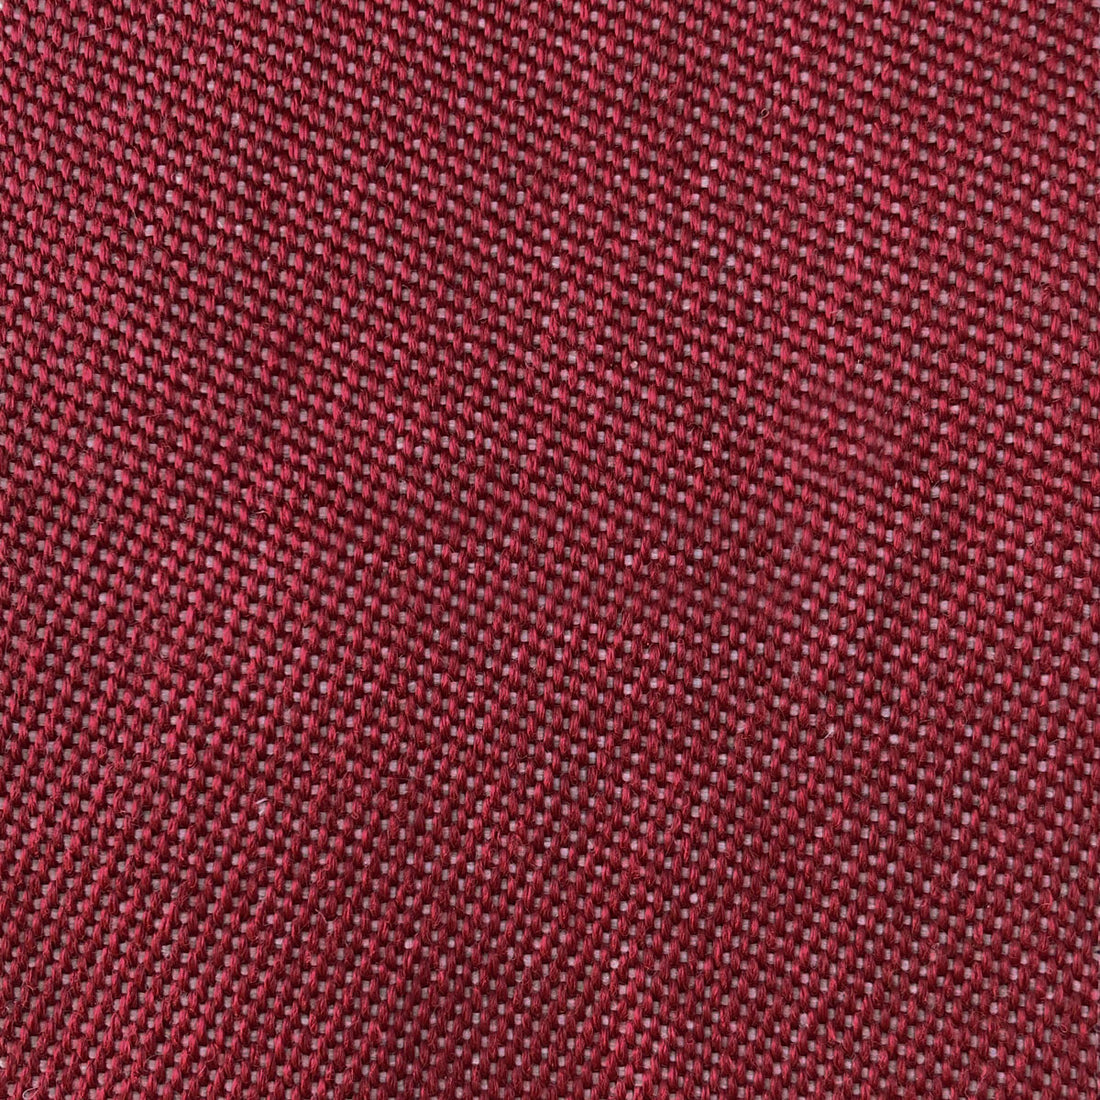 Max fabric in rojo color - pattern LCT1067.005.0 - by Gaston y Daniela in the Lorenzo Castillo VI collection